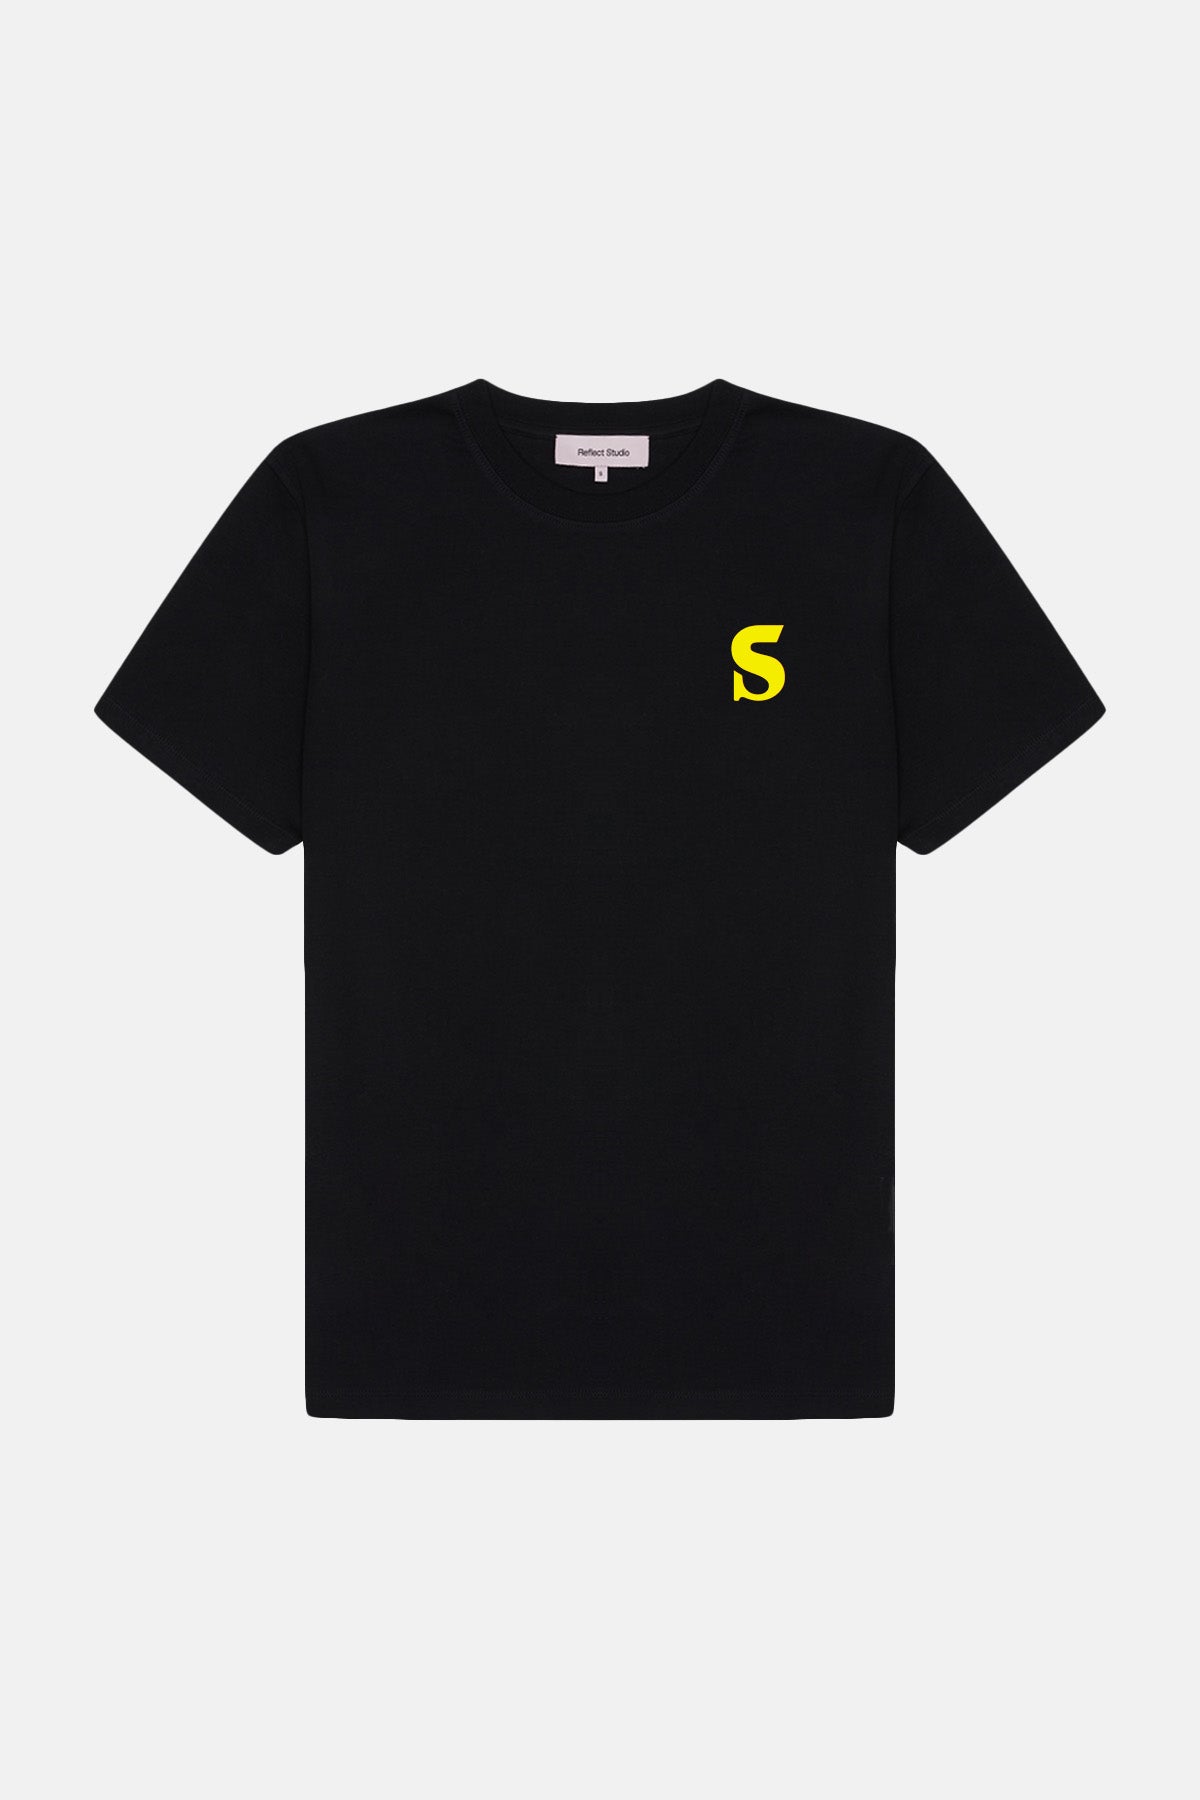 Issue #14 Premium T-Shirt - Siyah